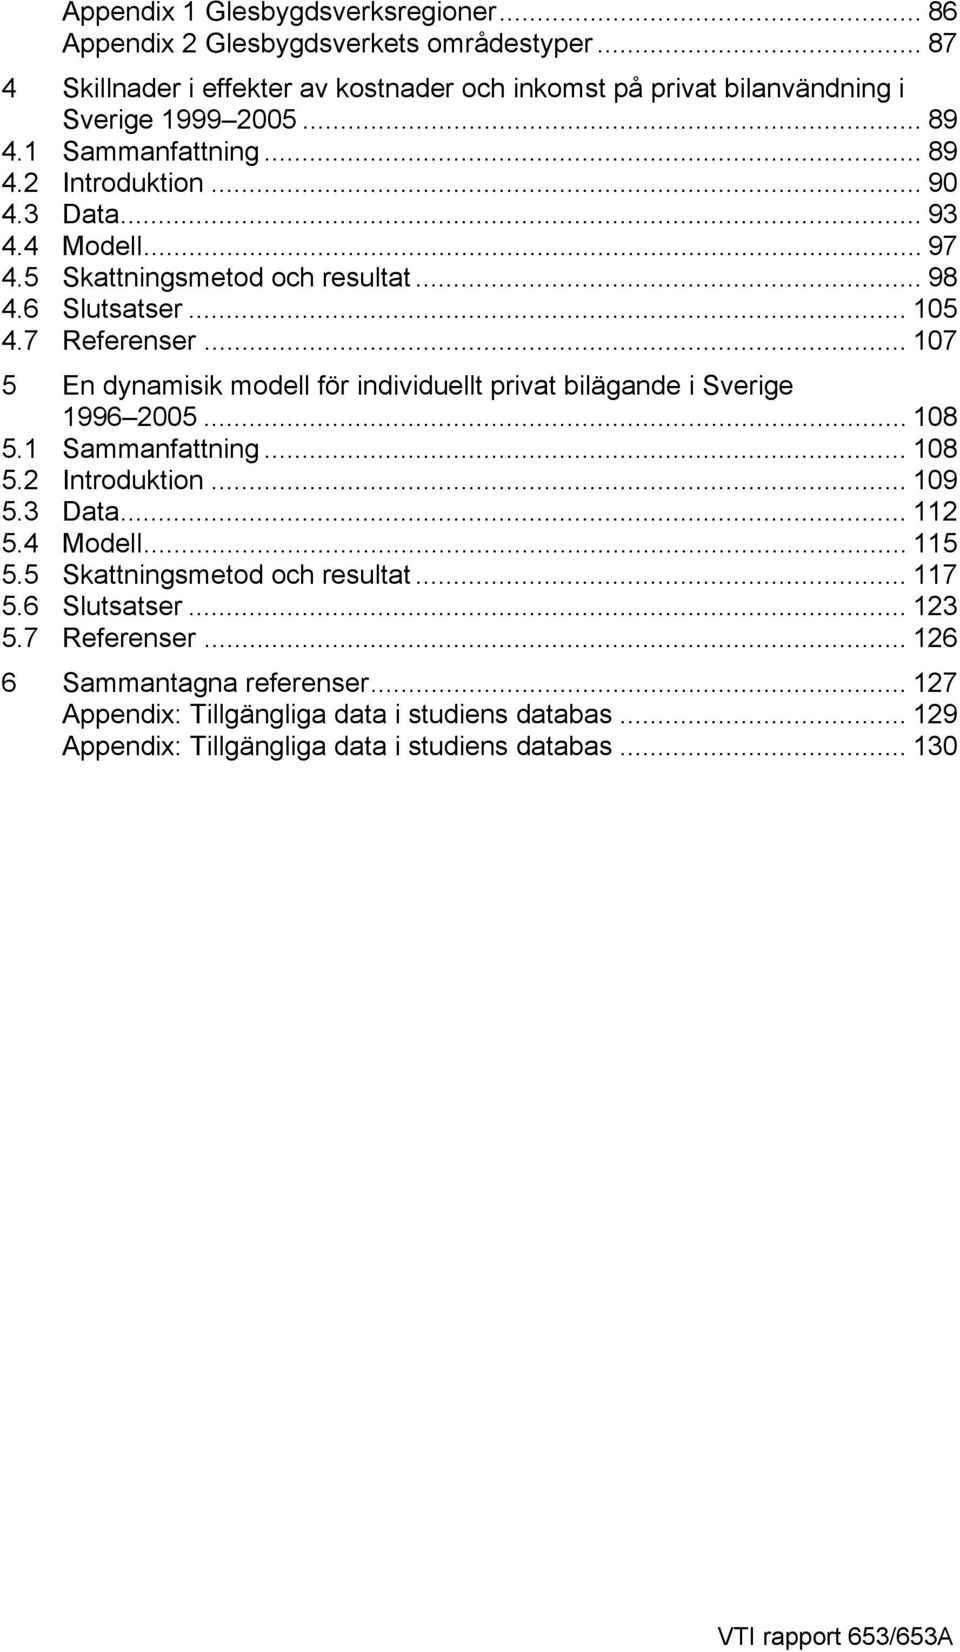 .. 107 5 En dynamisik modell för individuellt privat bilägande i Sverige 1996 2005... 108 5.1 Sammanfattning... 108 5.2 Introduktion... 109 5.3 Data... 112 5.4 Modell... 115 5.